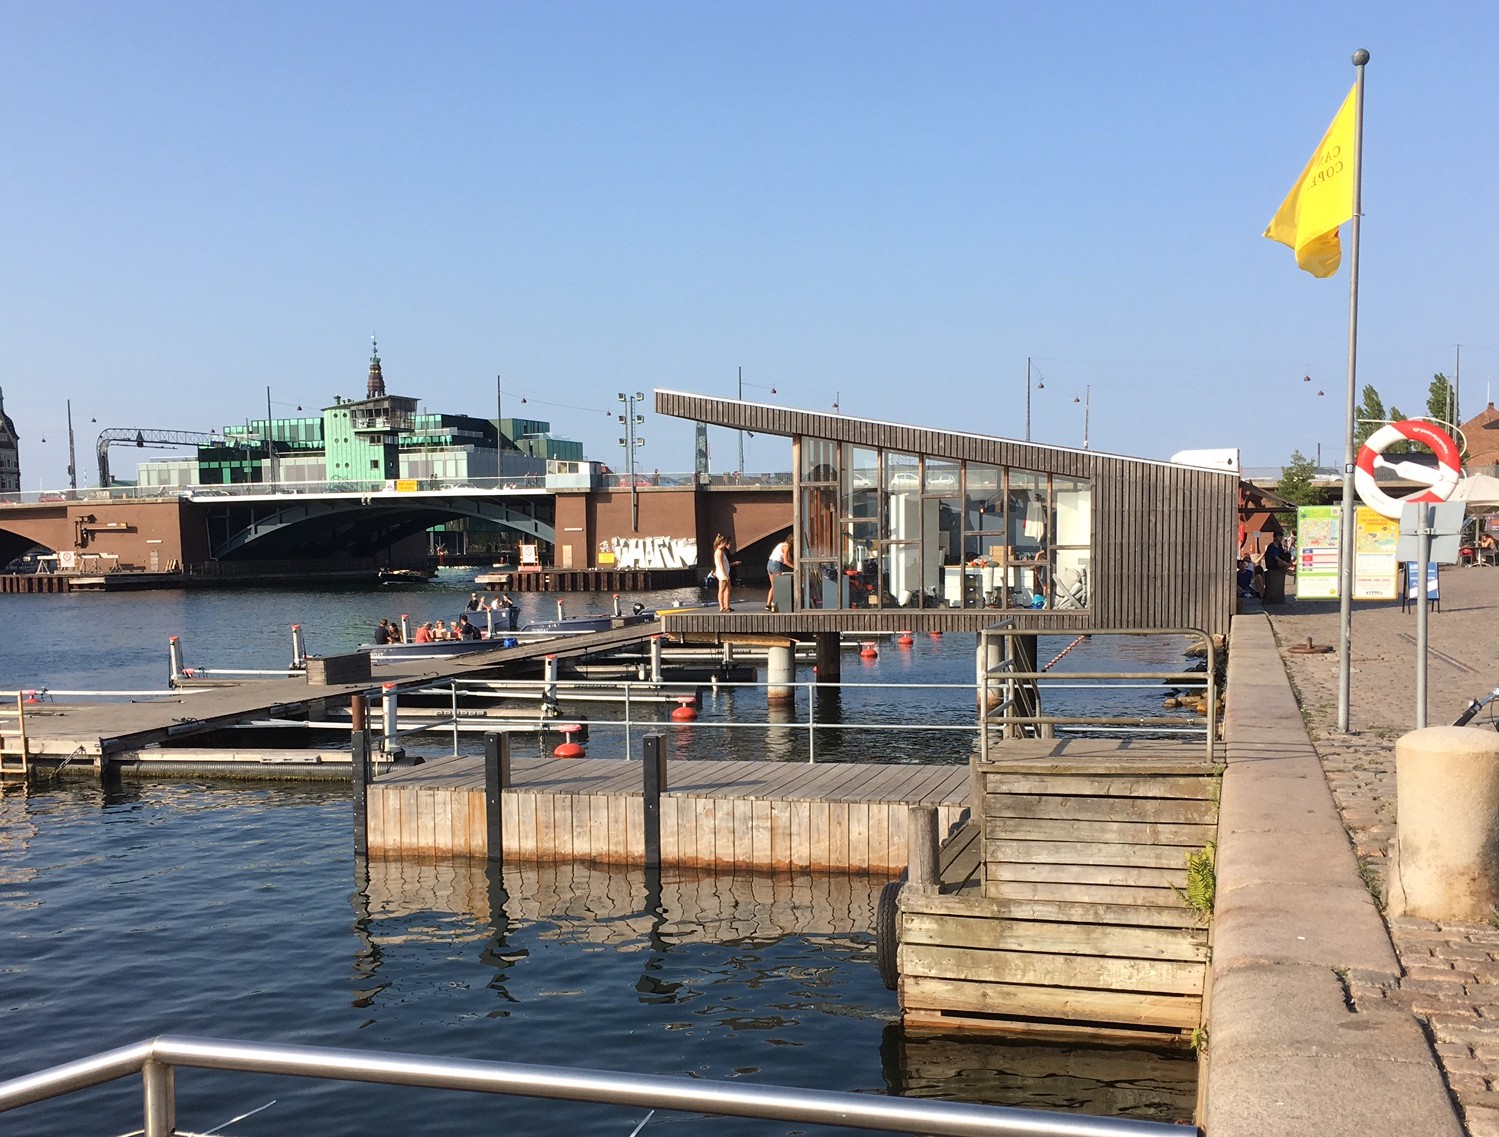 Les quais de Copenhague. Des restaurants, des activités de loisirs maritimes, des piscines en plein air... © Mireille Guignard